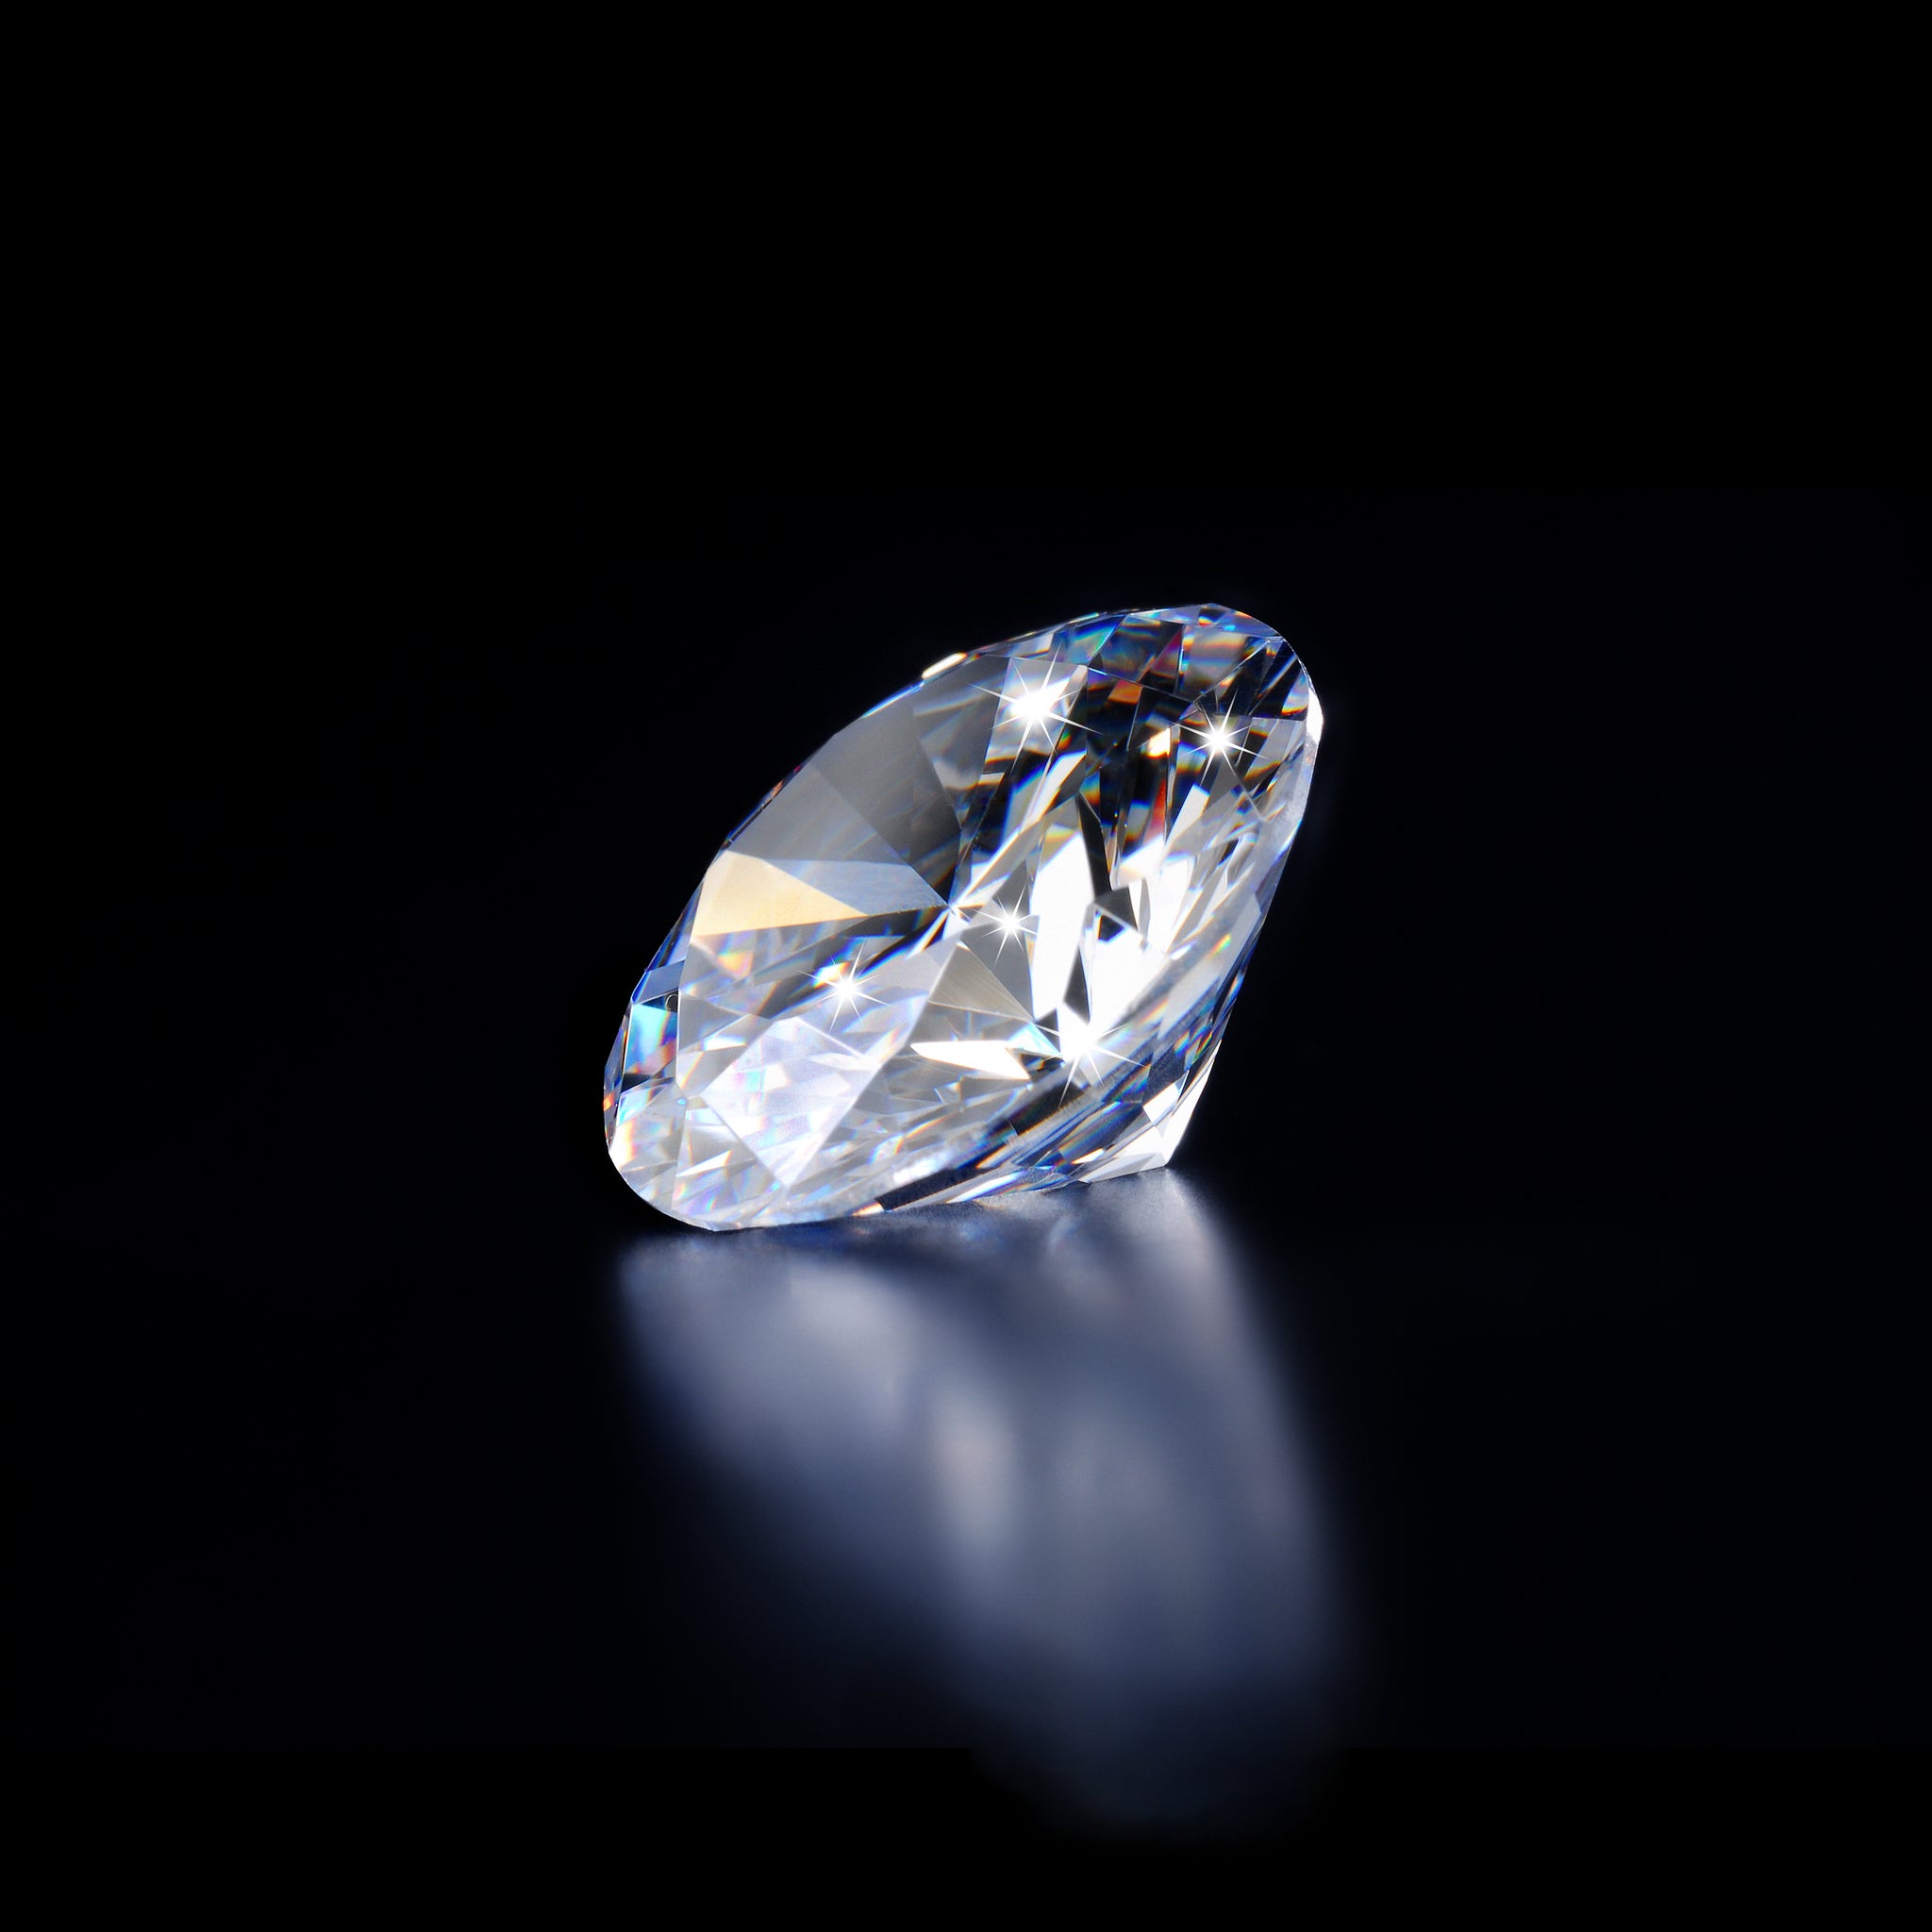 Reihe “Qualitätskriterien eines Diamanten”: Symmetrie und Politur